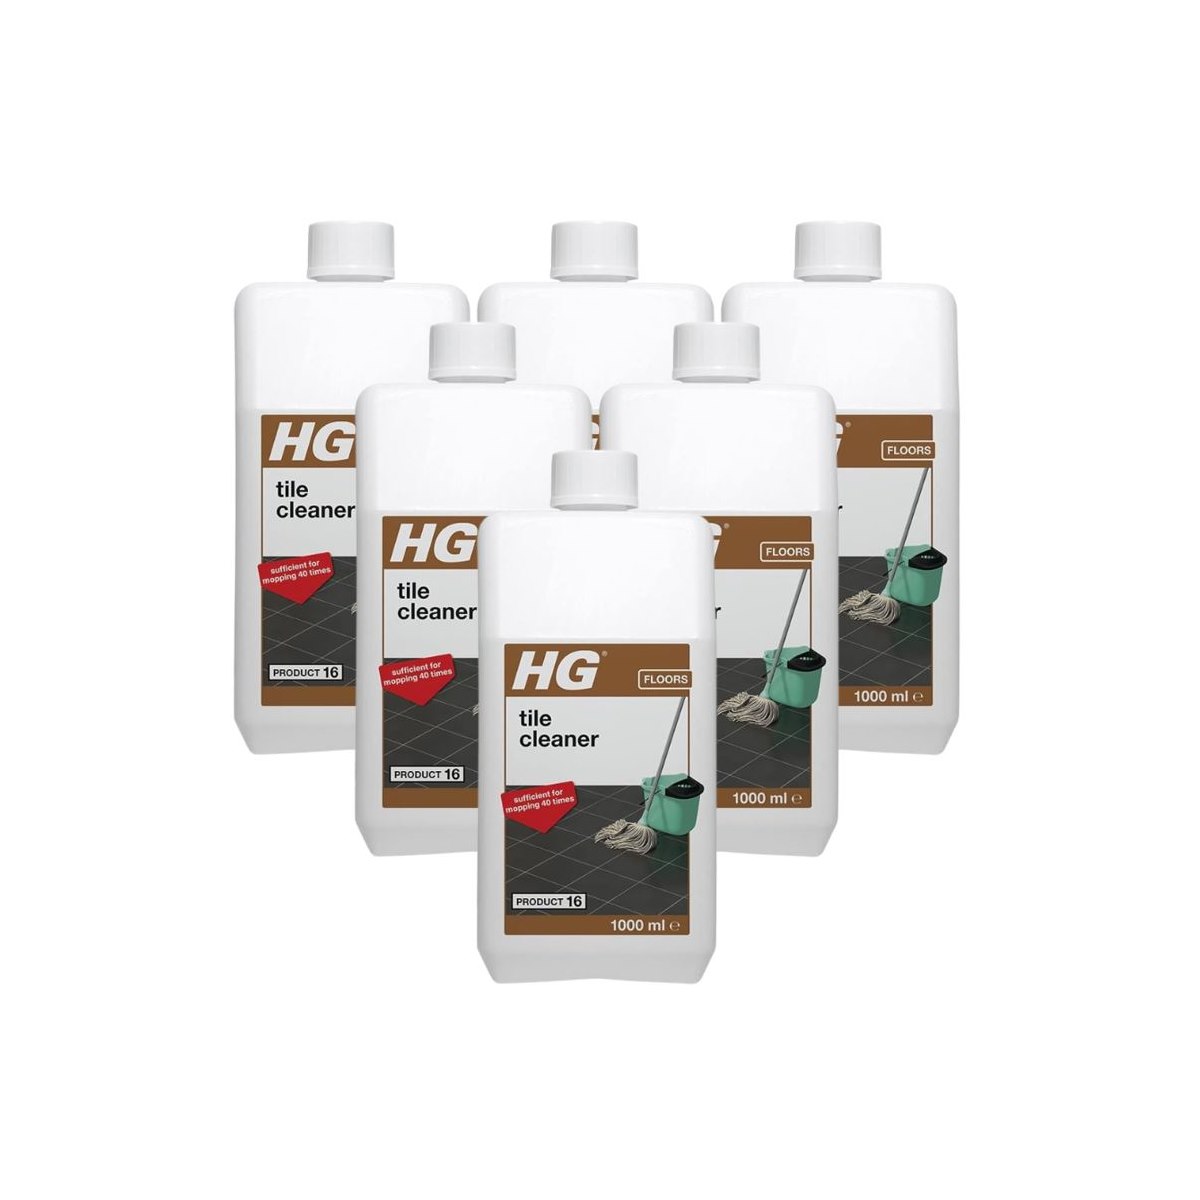 Case 6x Hg Tile Cleaner Product 16 1 Litre